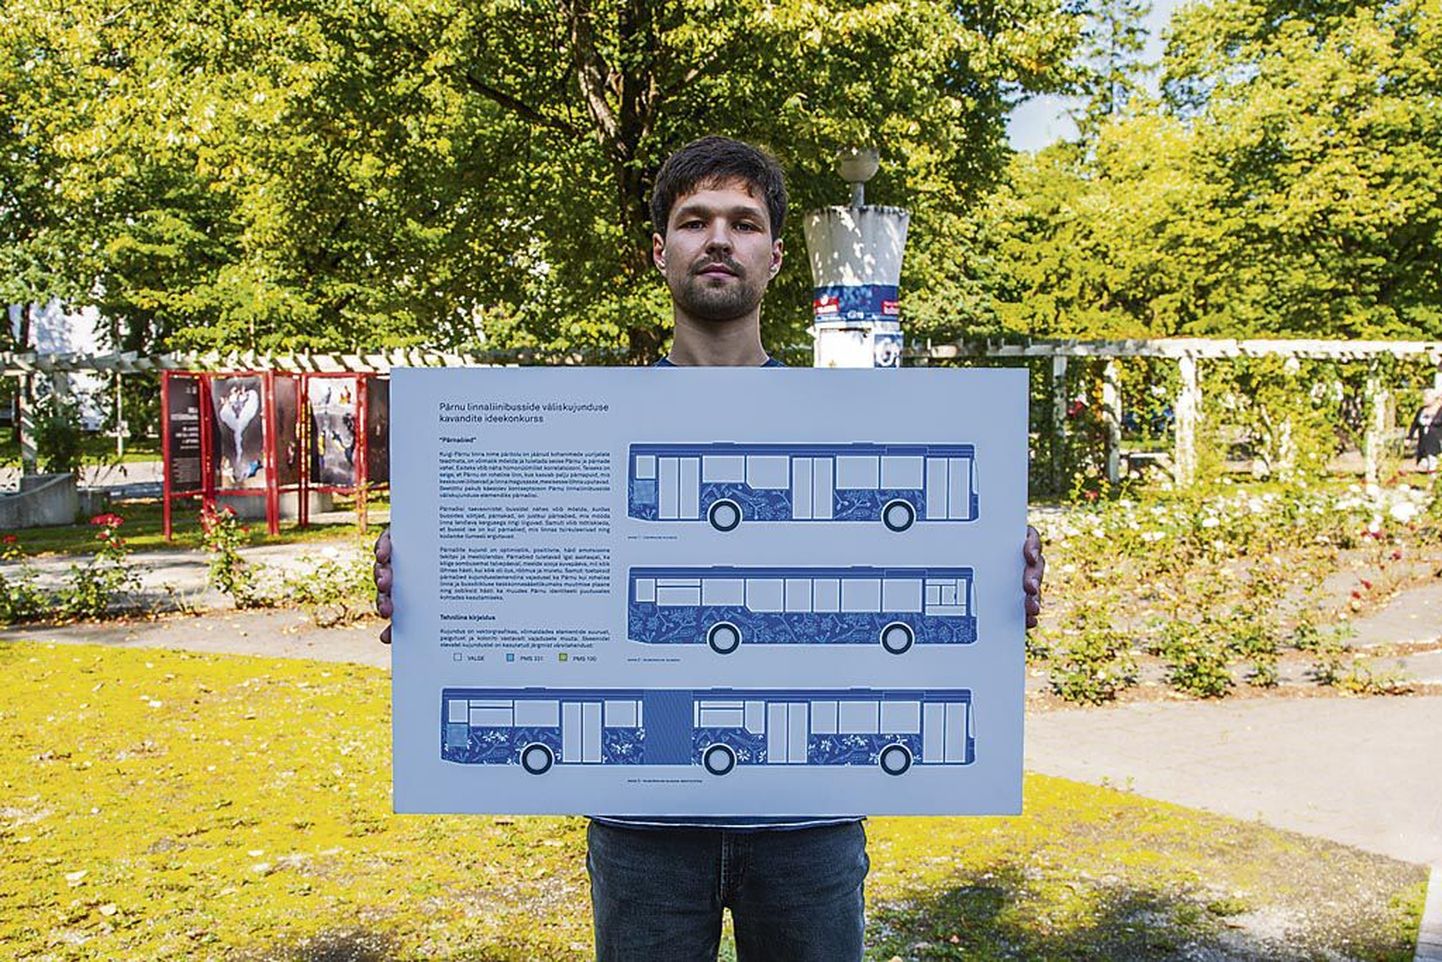 Kunstnik Fred Kotkas näitab, millise kujundusega bussid hakkavad Pärnus järgmisest aastast ringi vurama. Täpsem kujundus selgub alles siis, kui on teada, millised need bussid olema saavad.